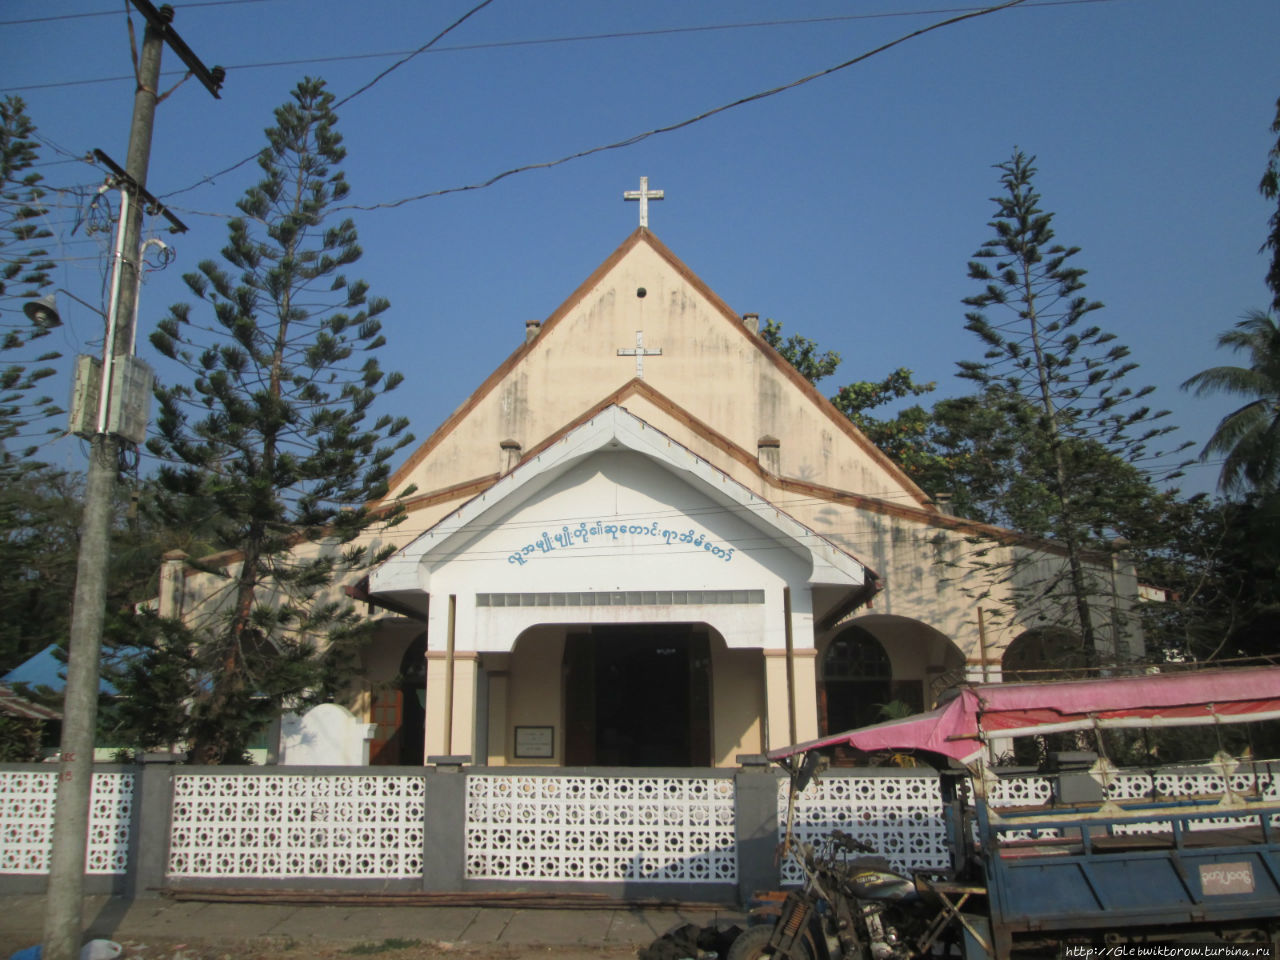 Прогулка по району с церквями и гурдварой Патейн, Мьянма